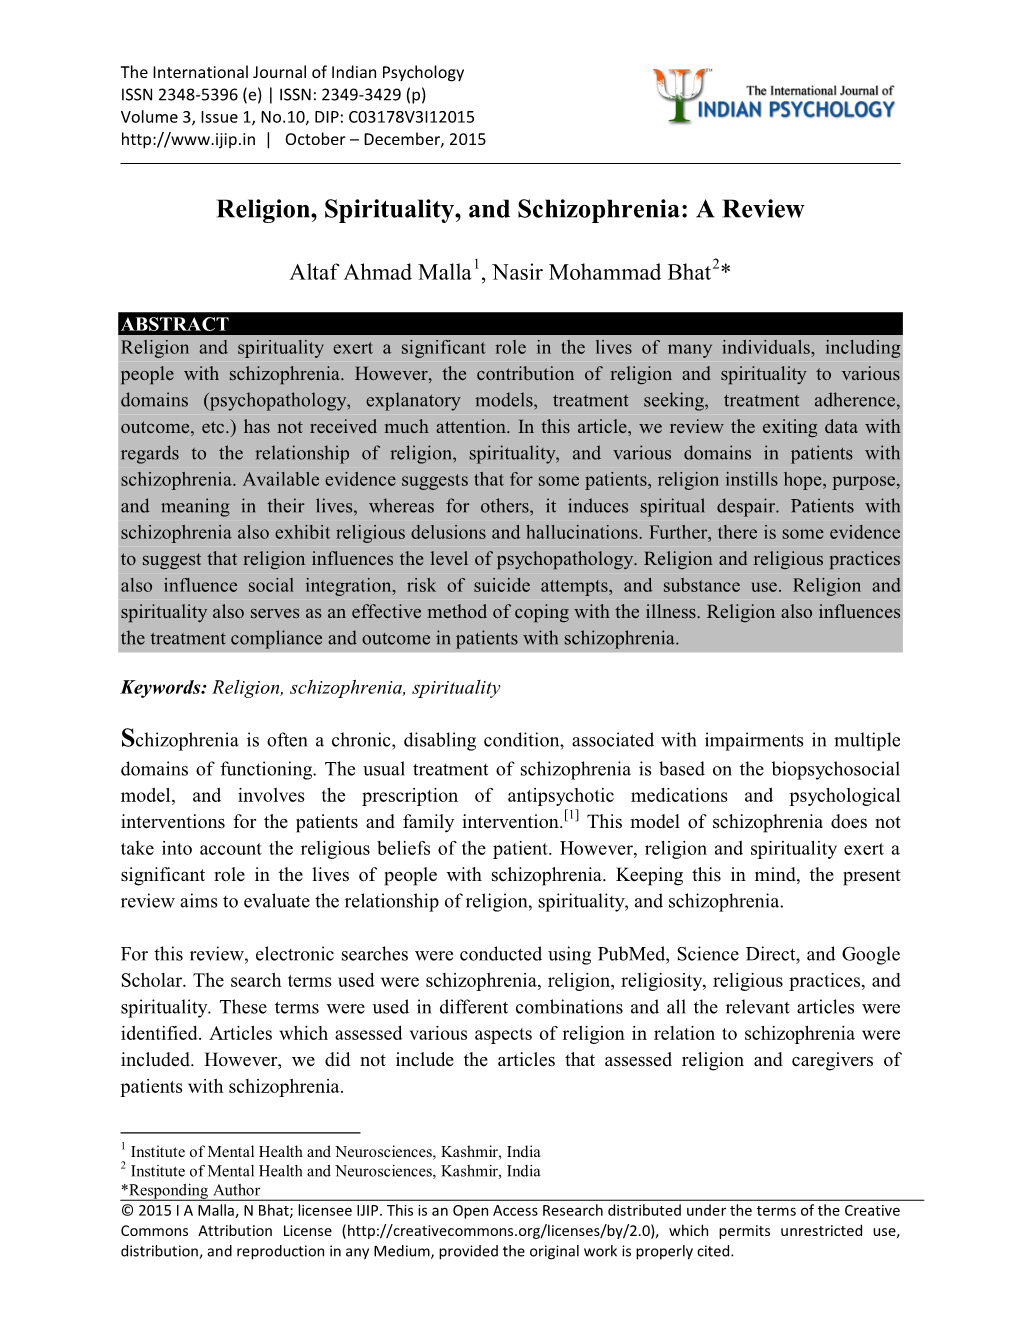 Religion, Spirituality, and Schizophrenia: a Review